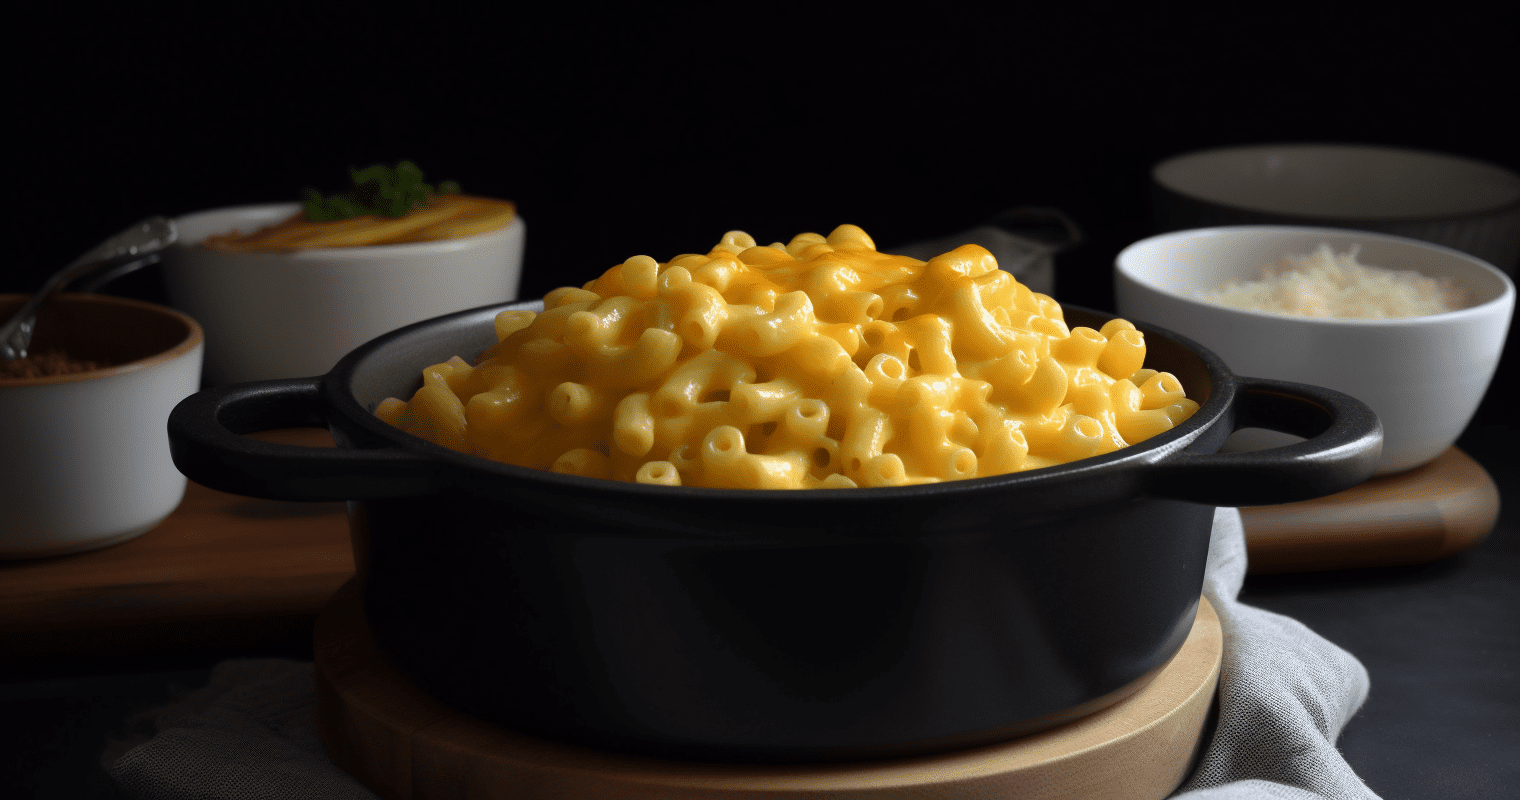 Mac and Cheese Final Dish